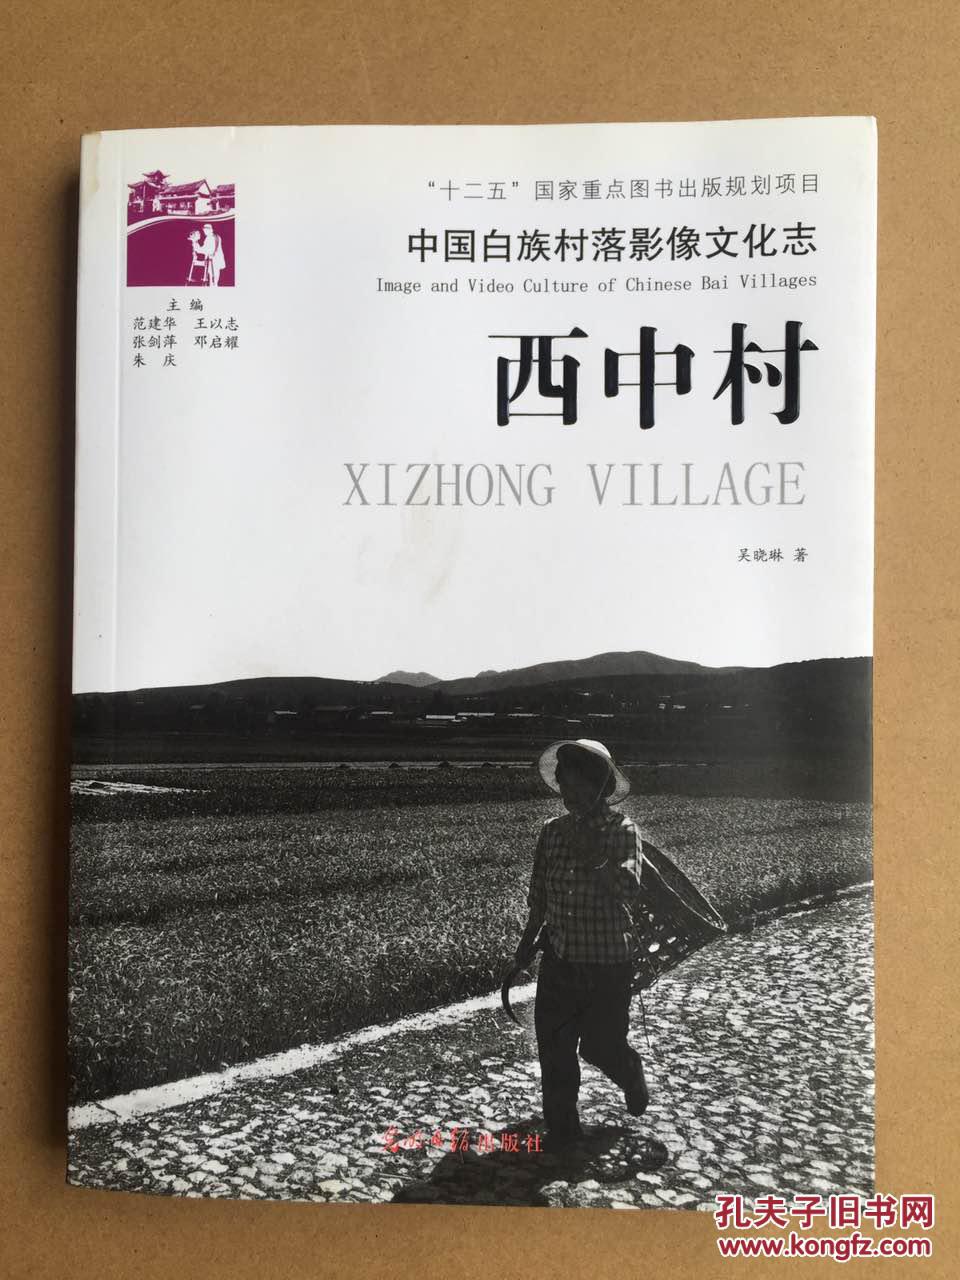 中国白族村落影像文化志——西中村